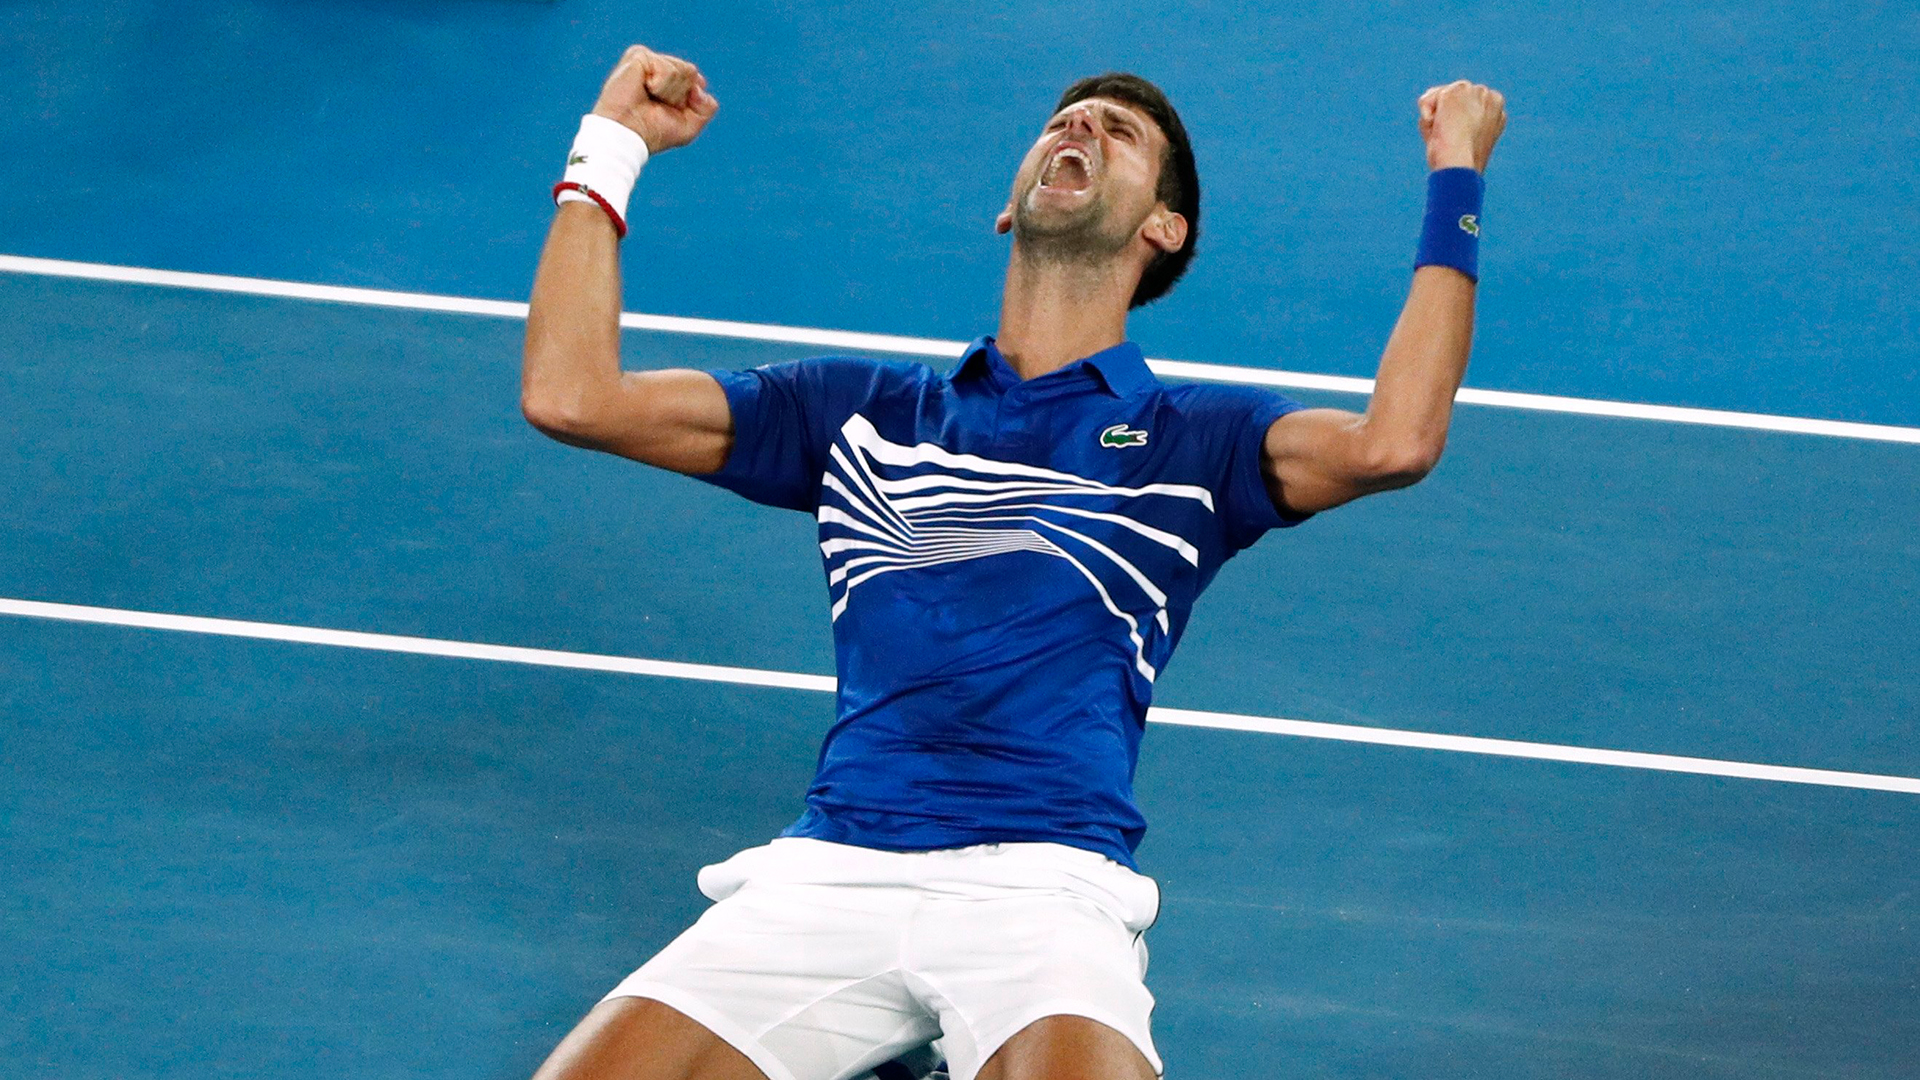 Der Serbe Novak Djokovic reagiert, nachdem er sein Spiel gegen den Spanier Rafael Nadal gewonnen hat. | Bildquelle: REUTERS